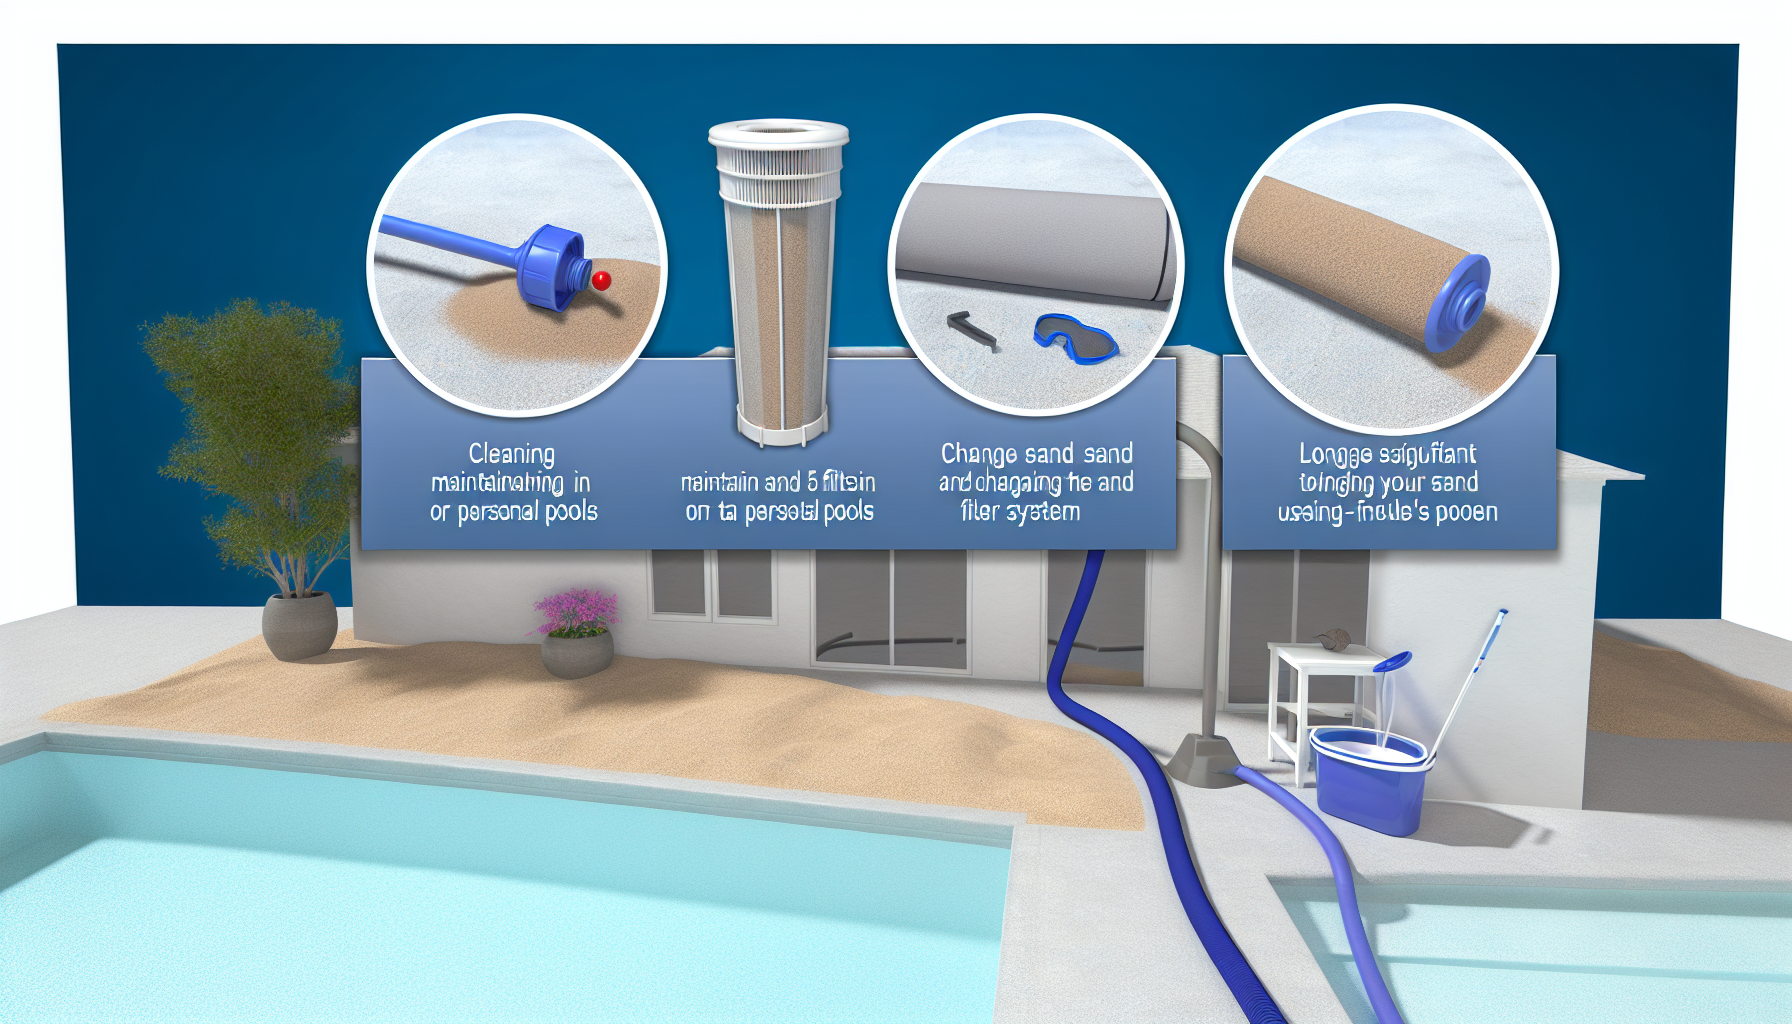 Illustration zur Wartung und Reinigung von Poolfiltersystemen mit verschiedenen Werkzeugen und Komponenten.